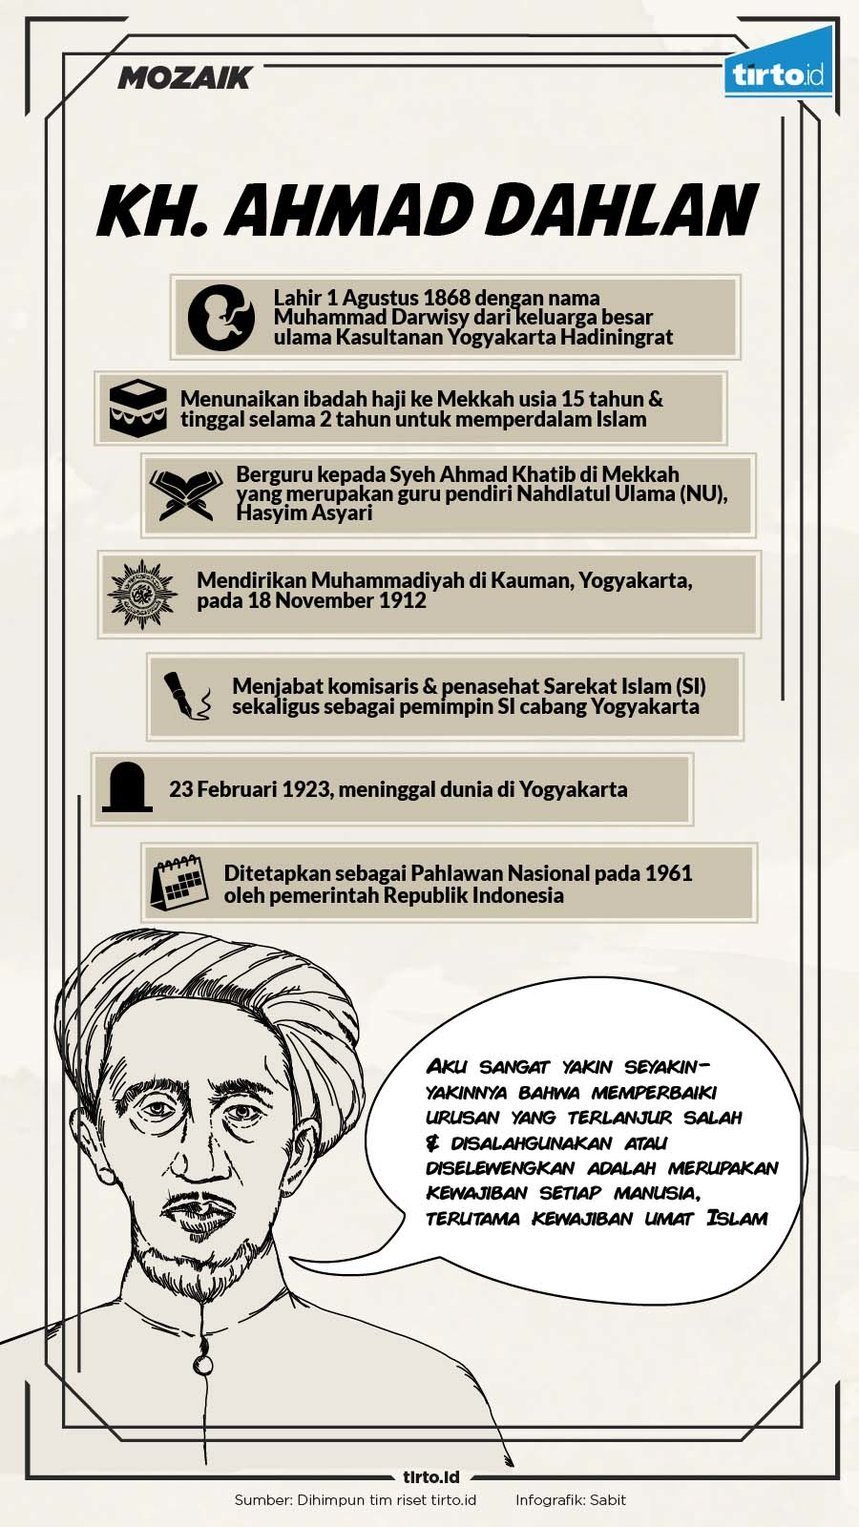 Infografik Mozaik KH Ahmad Dahlan Muhammadiyah